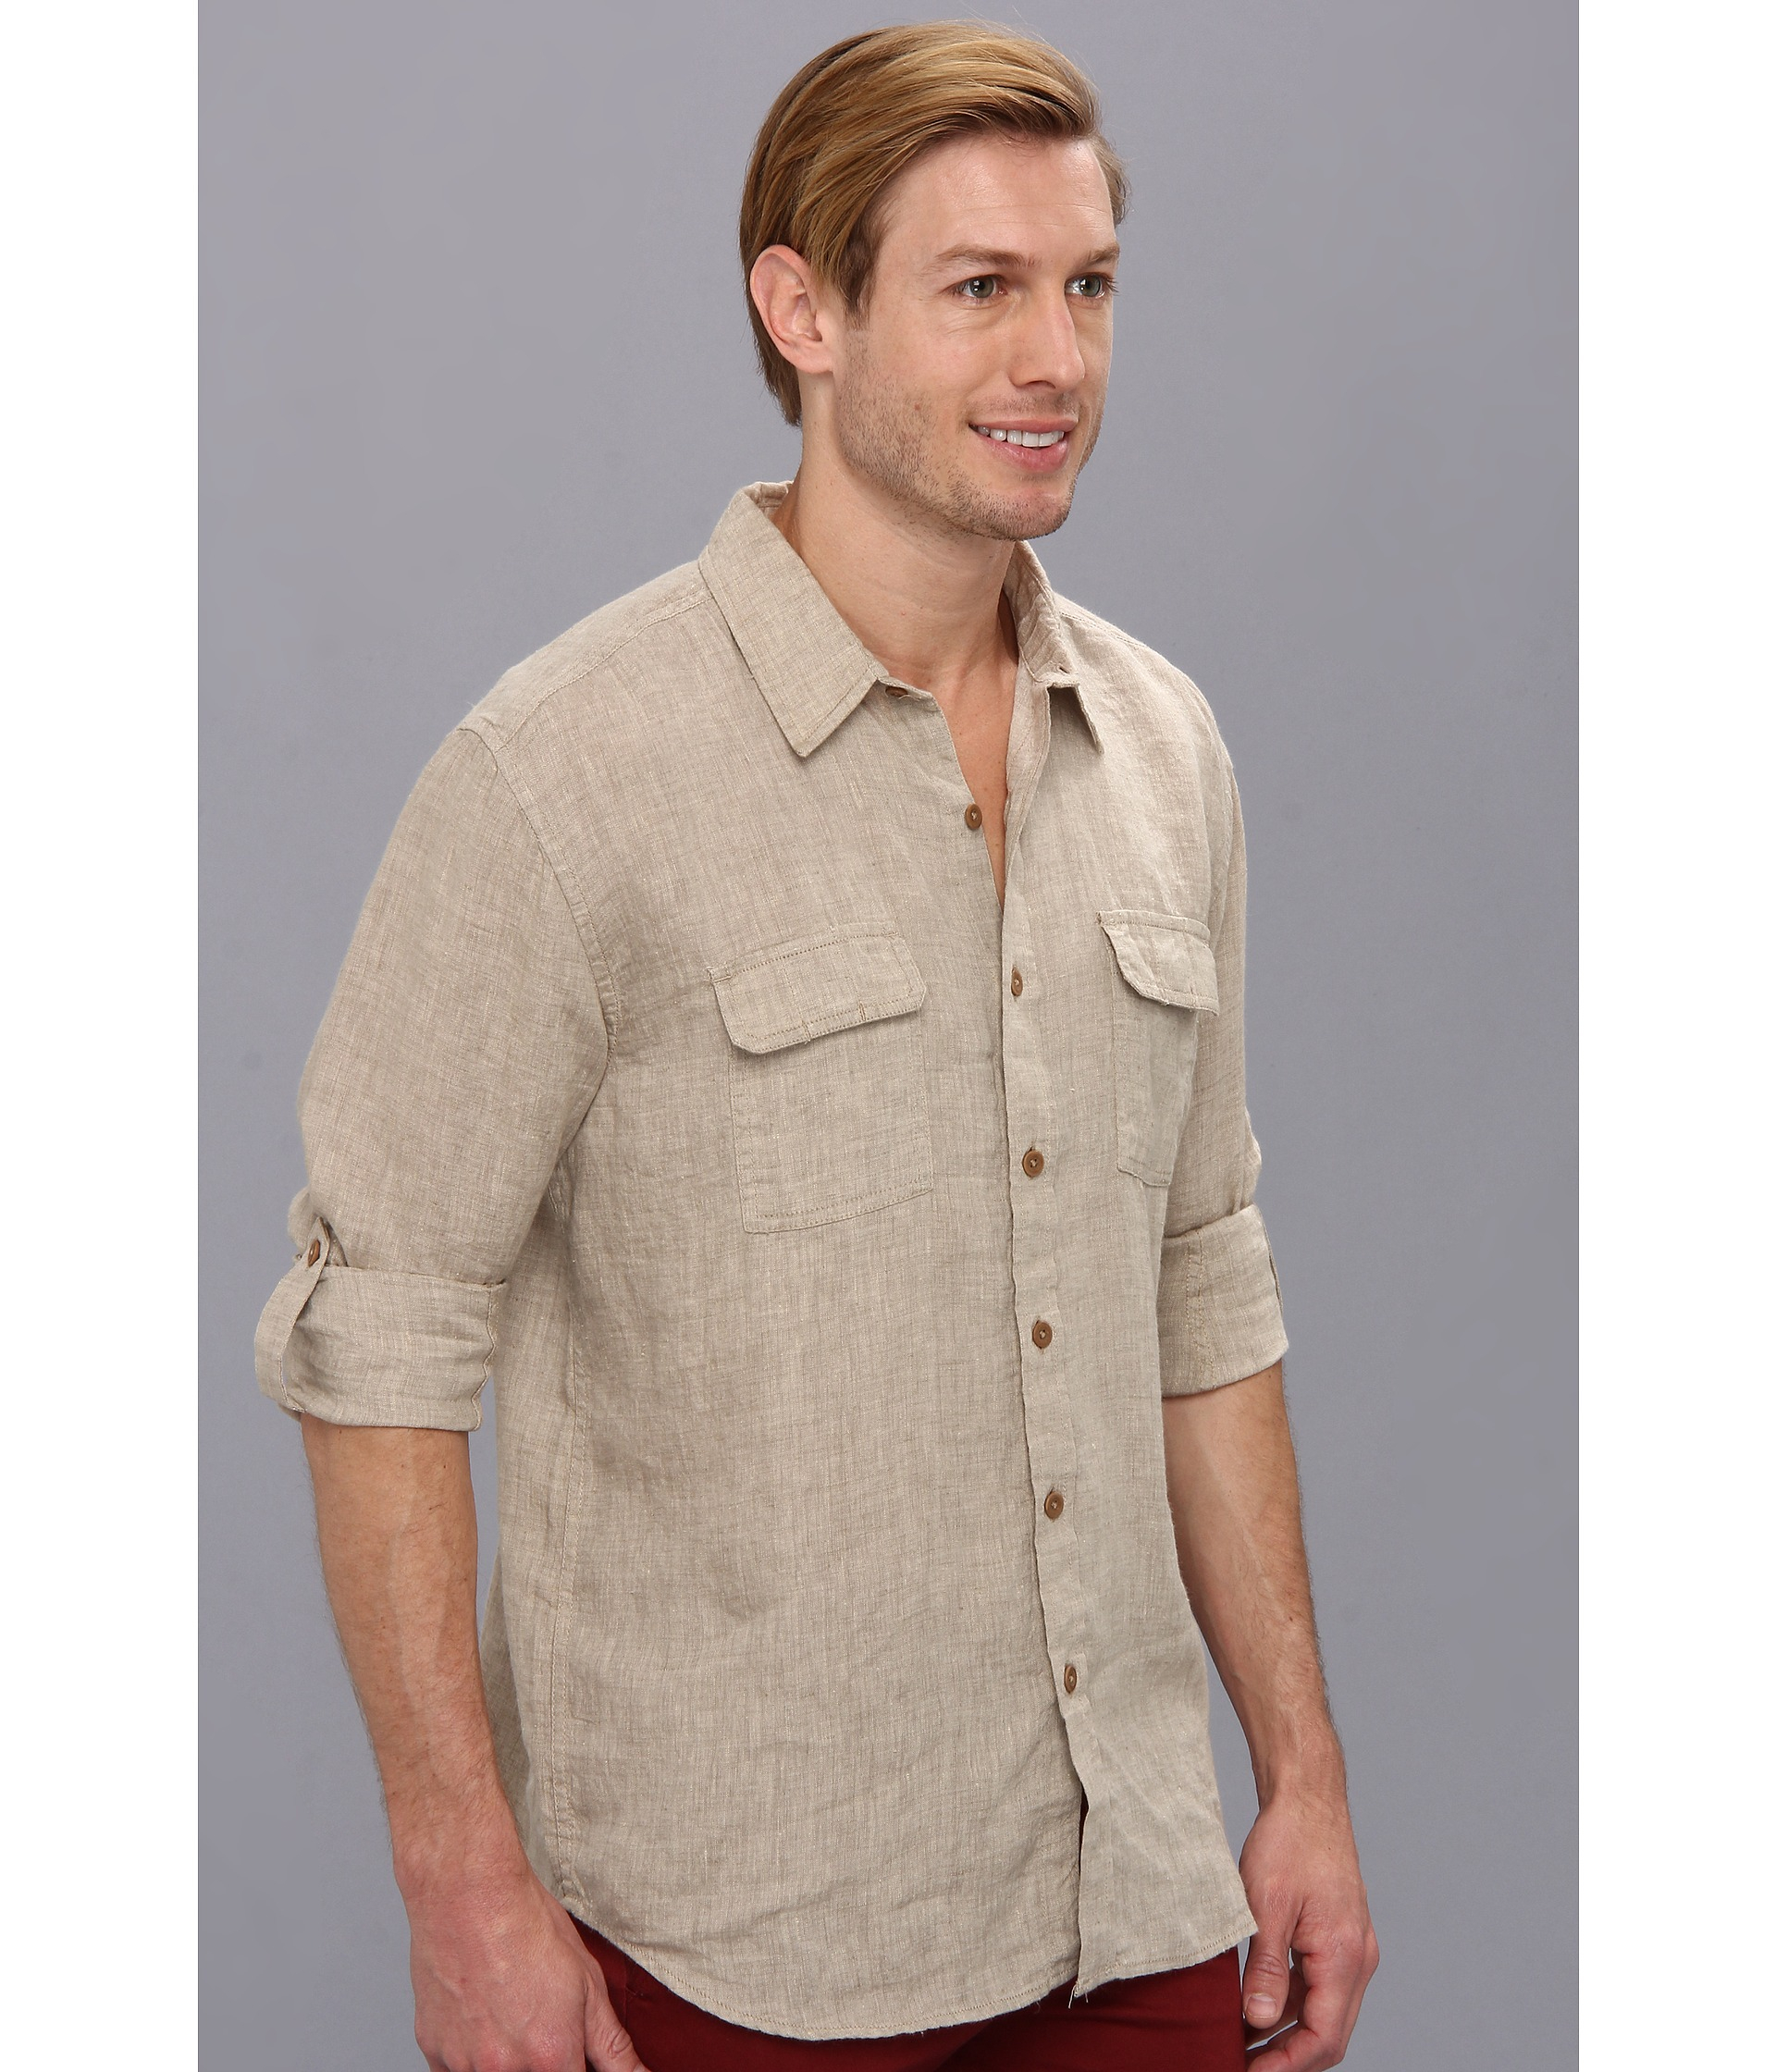 Lucky Brand Grant Linen Safari Shirt in Khaki Sand (Natural) for Men - Lyst